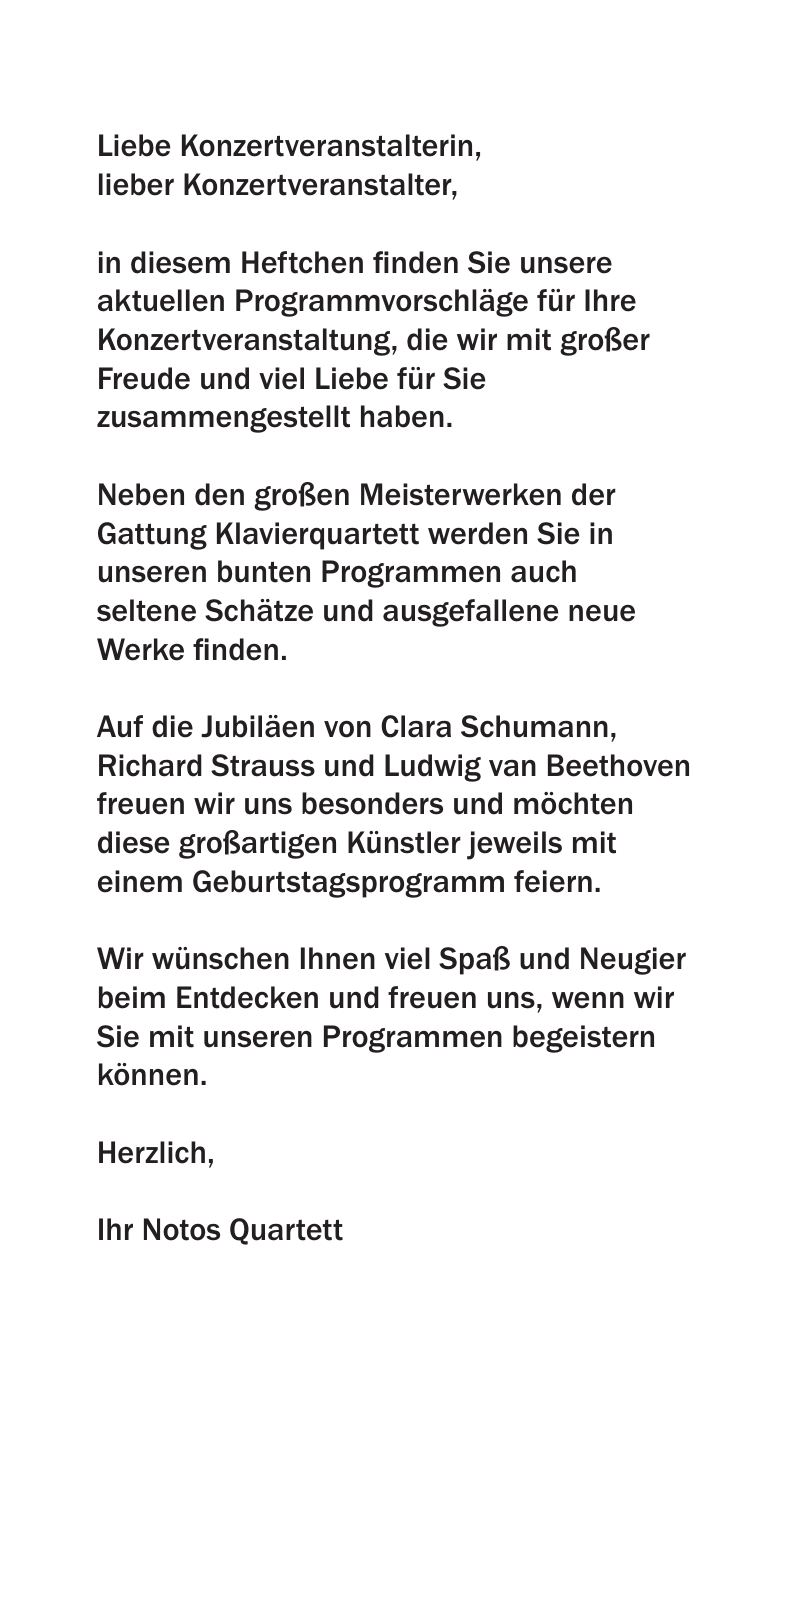 Vorschau Notos Quartett Programme 18/19/20 Seite 2